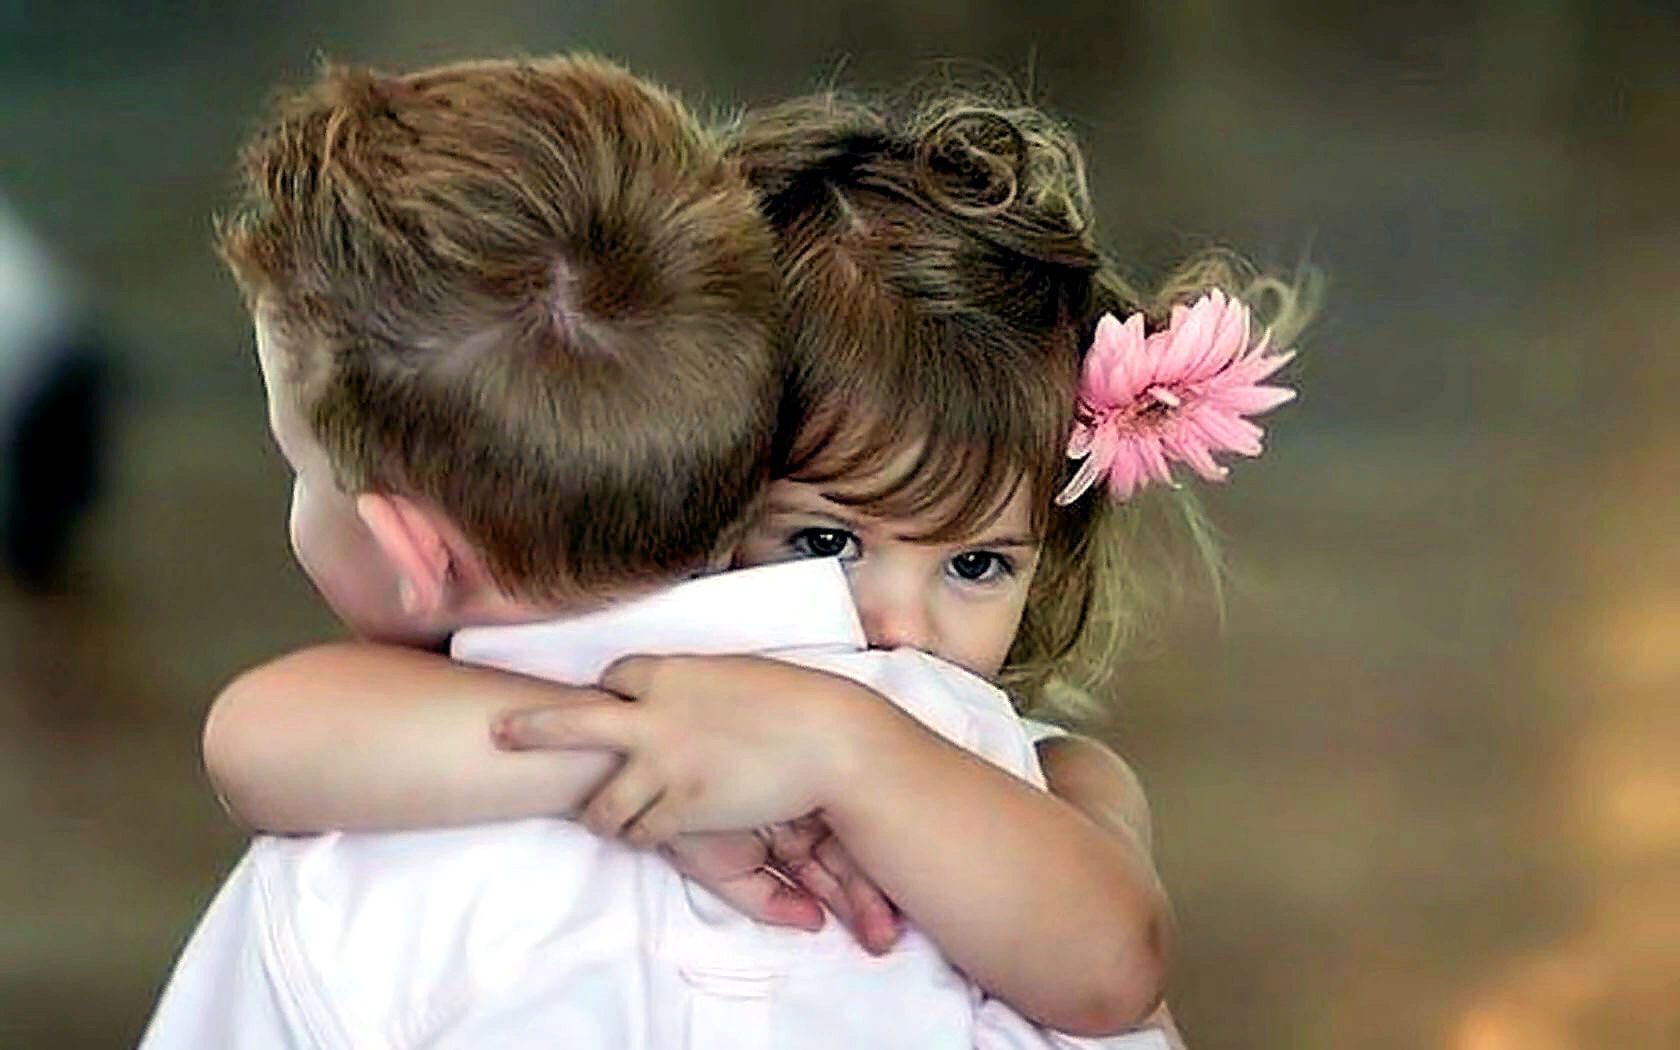 Мальчик и девочка обнимаются